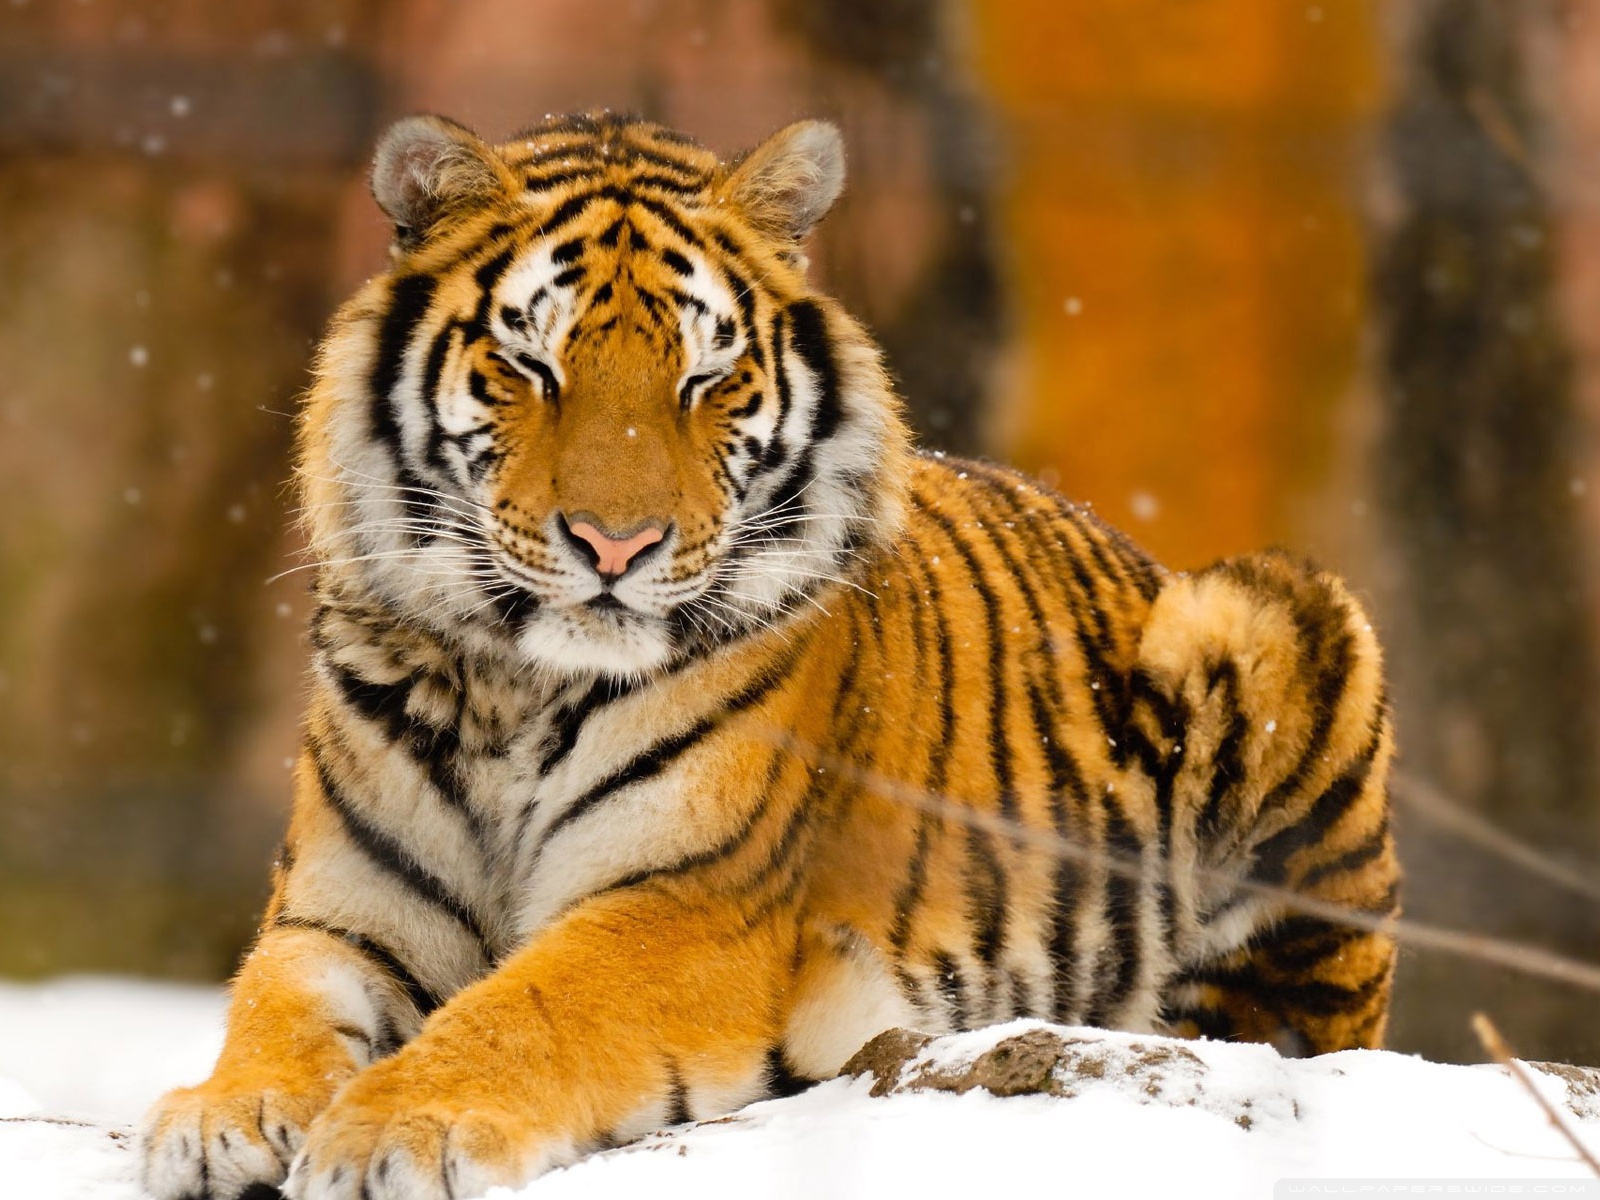 wildtier tapete hd,tiger,tierwelt,landtier,bengalischer tiger,sibirischer tiger